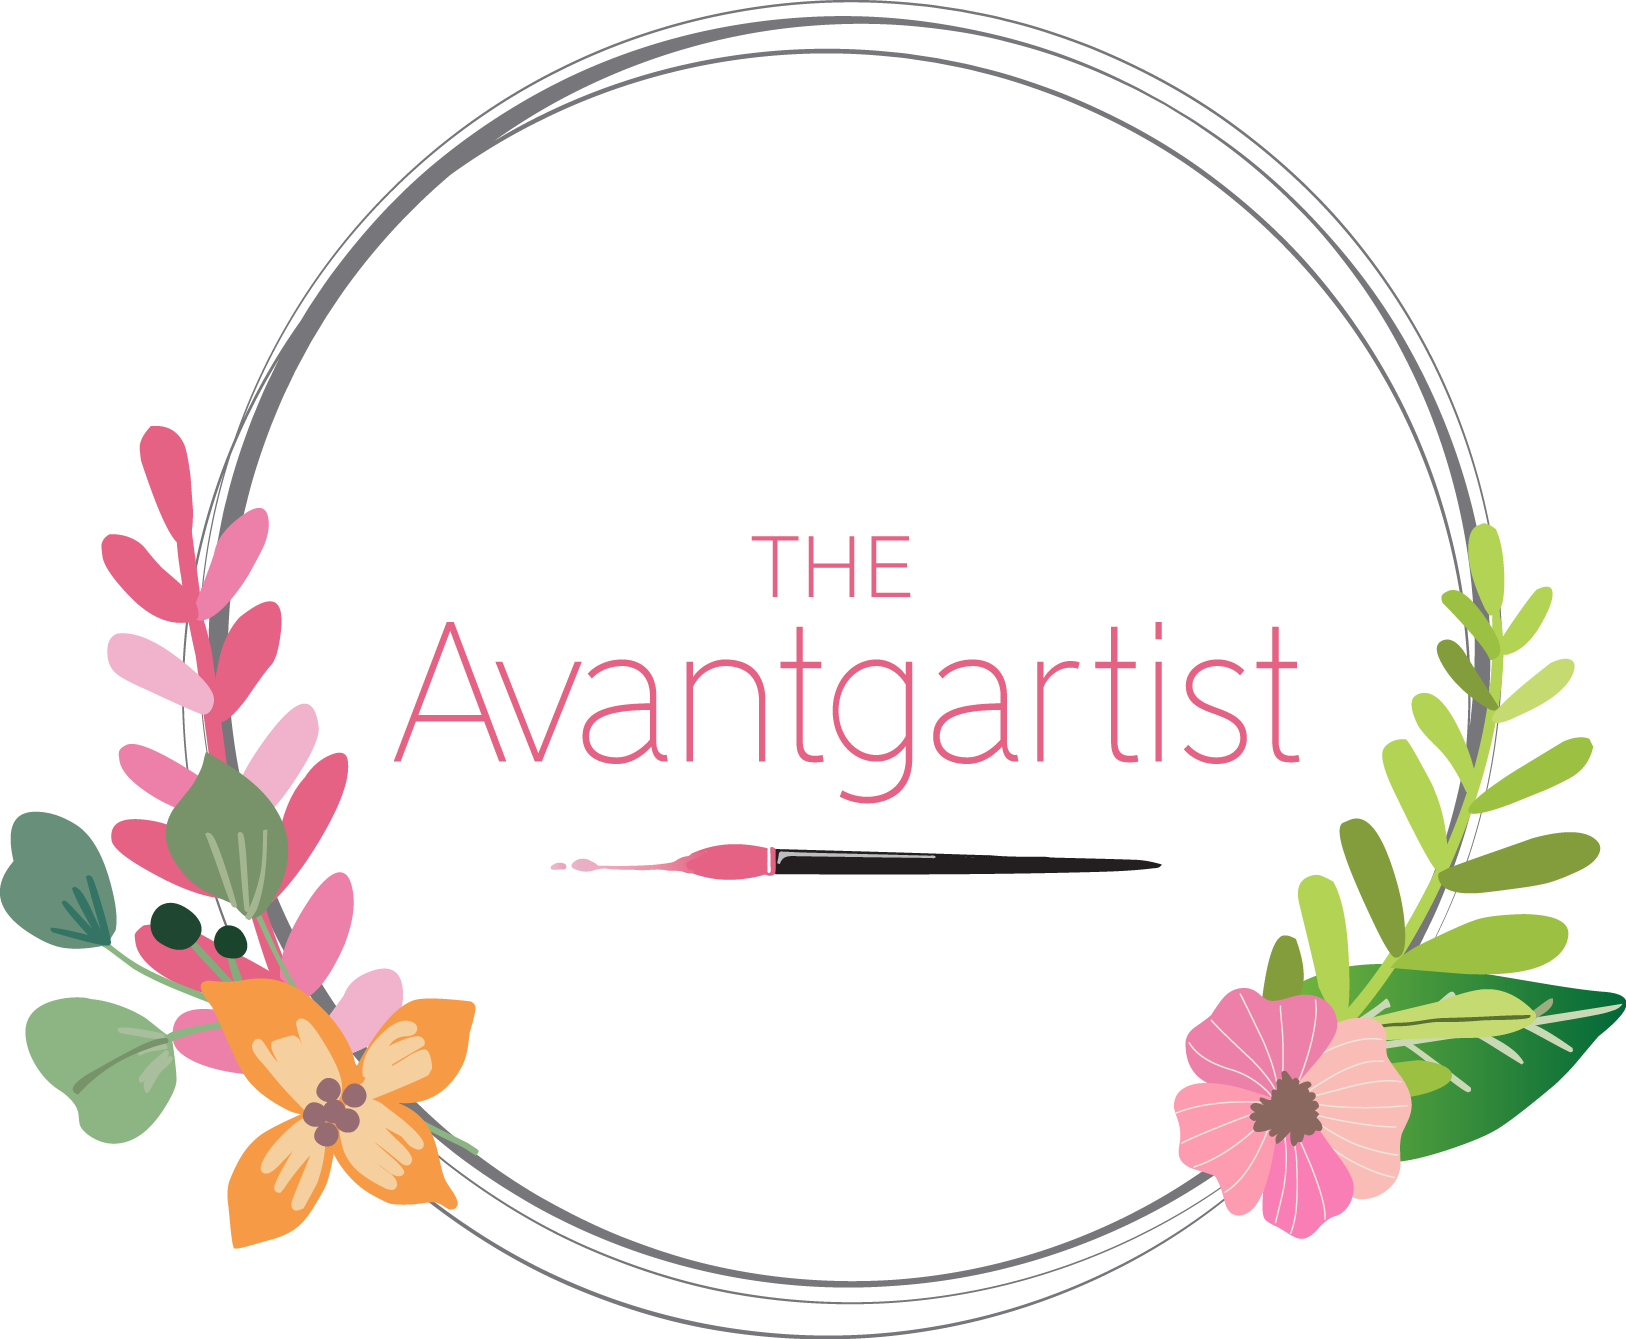 The Avantgartist